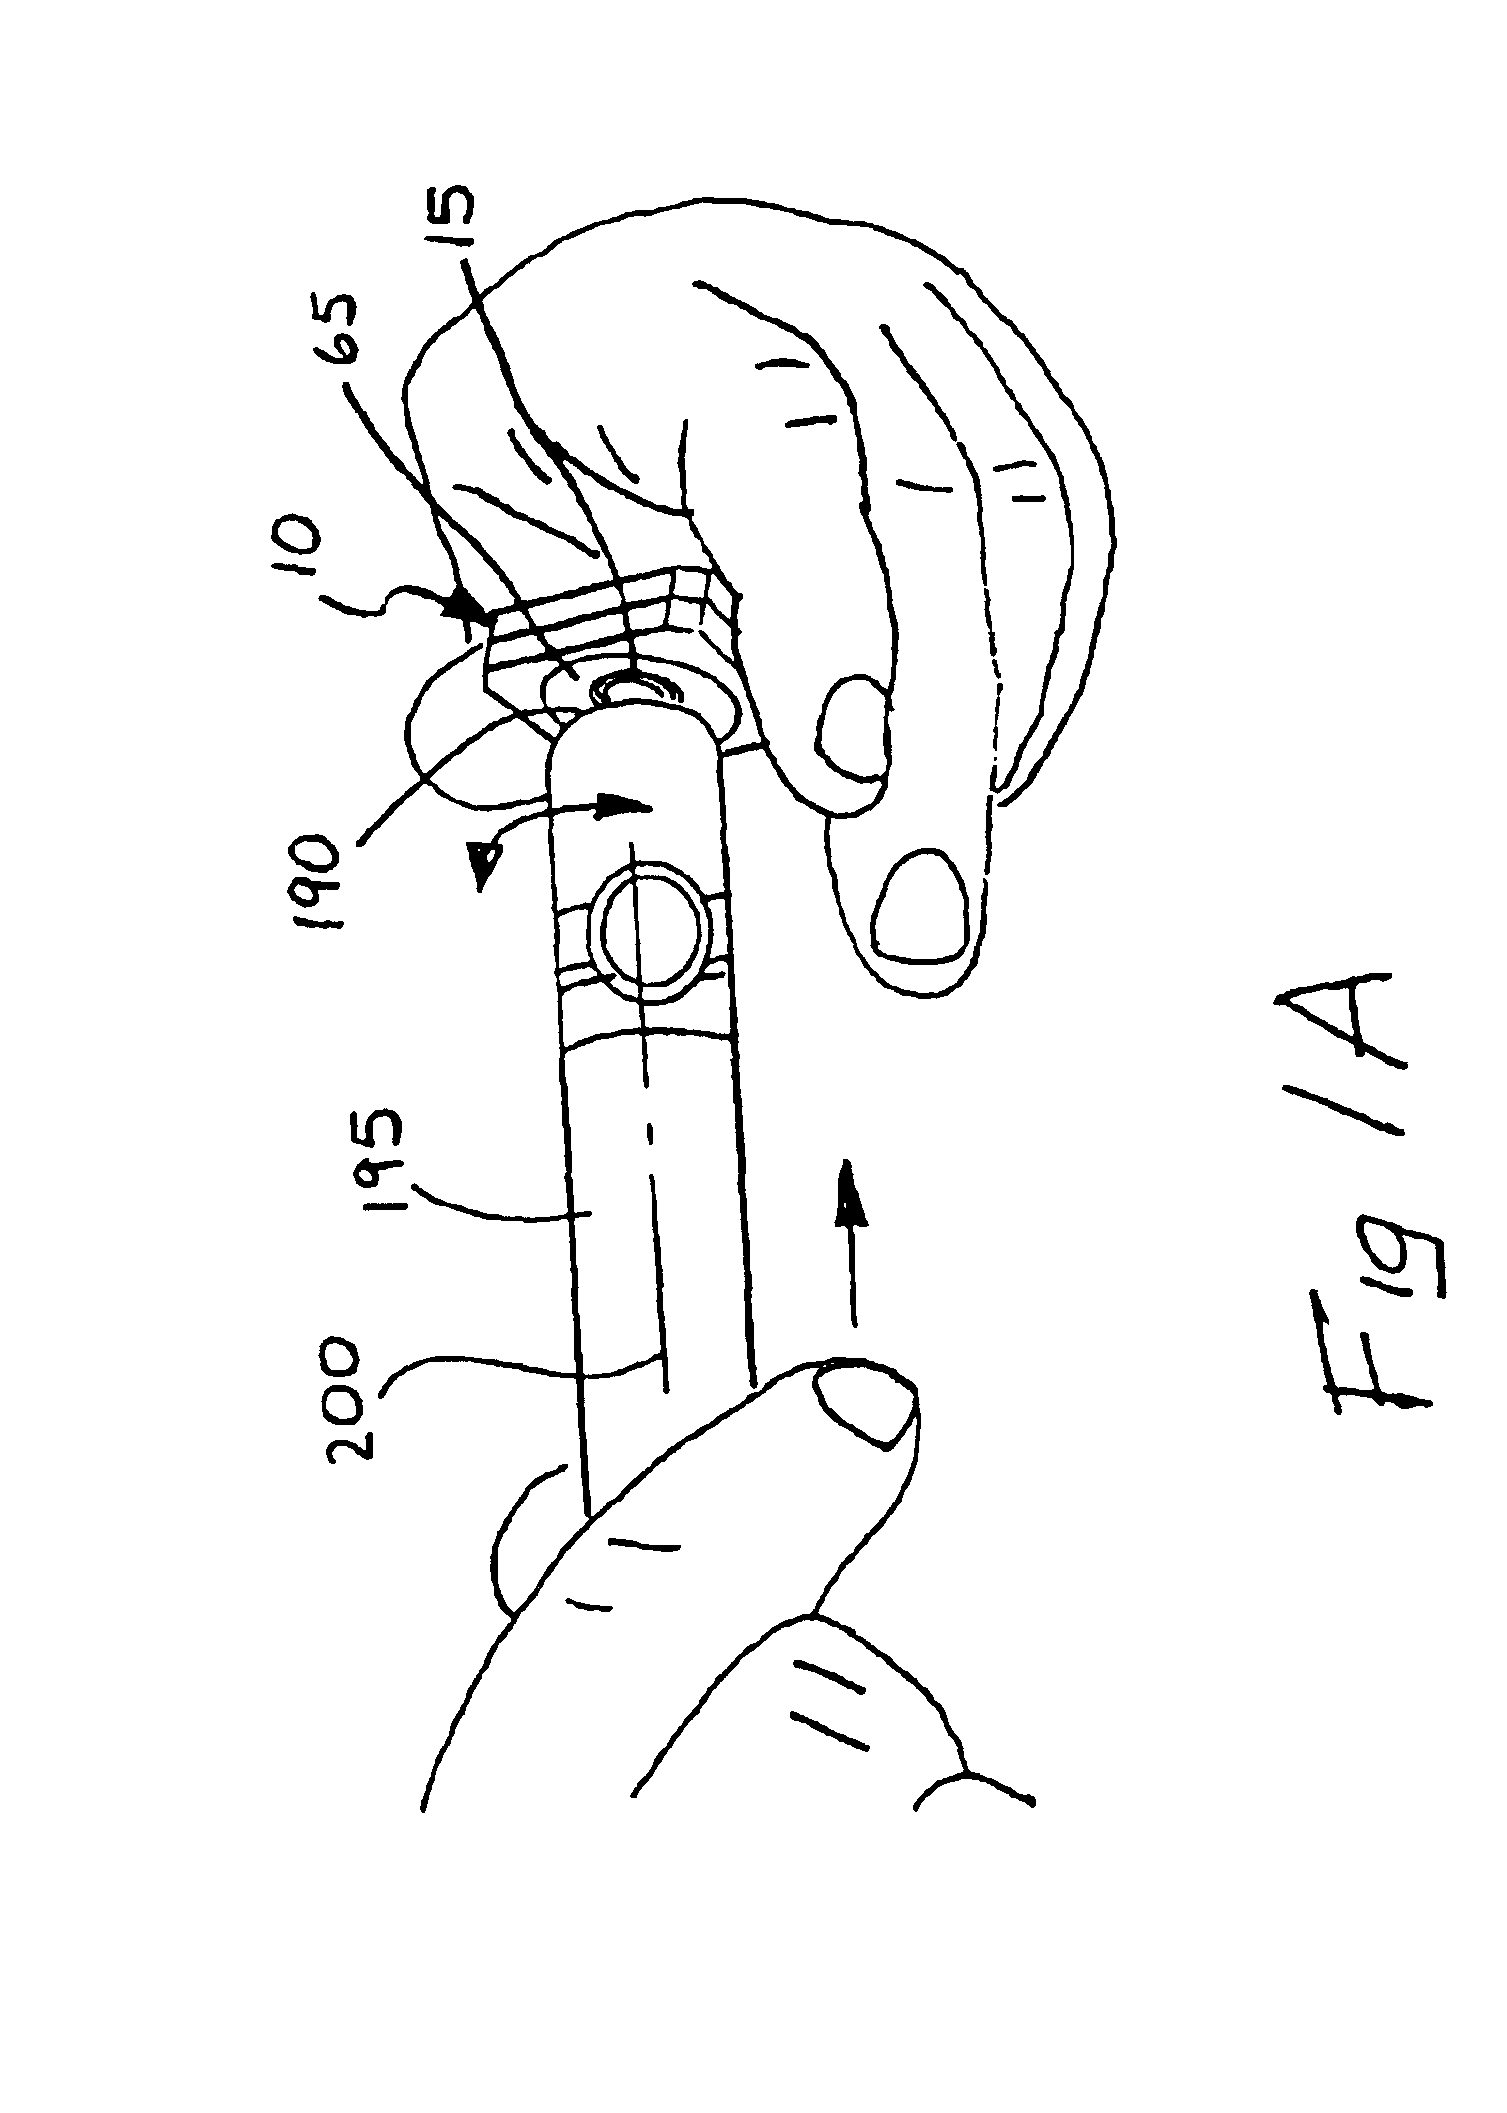 Cigar tip plug cutter